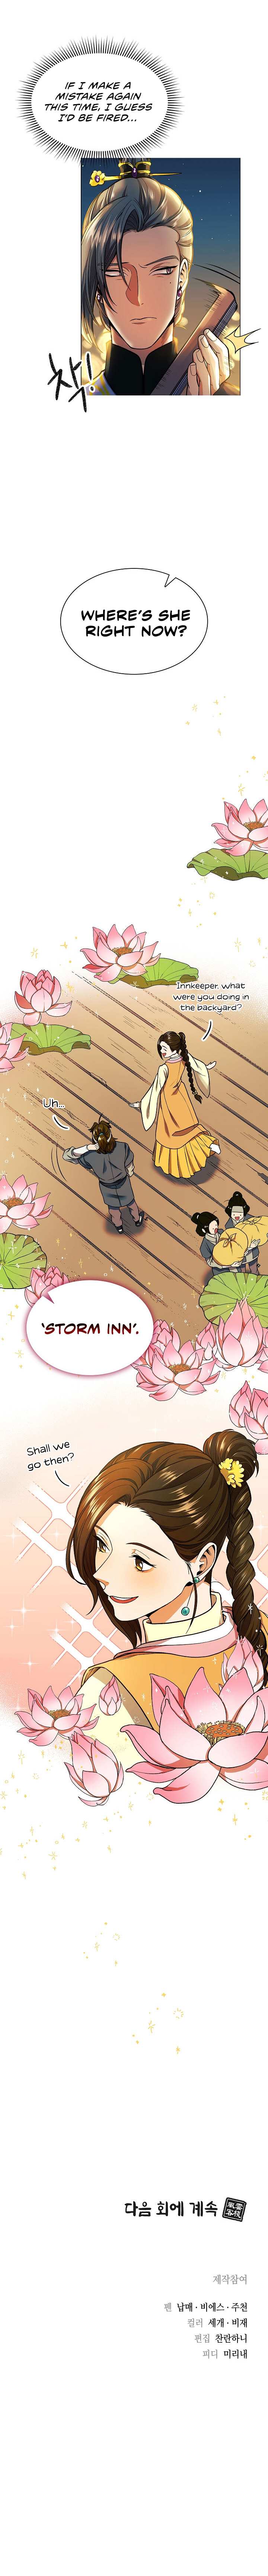 Storm Inn chapter 13